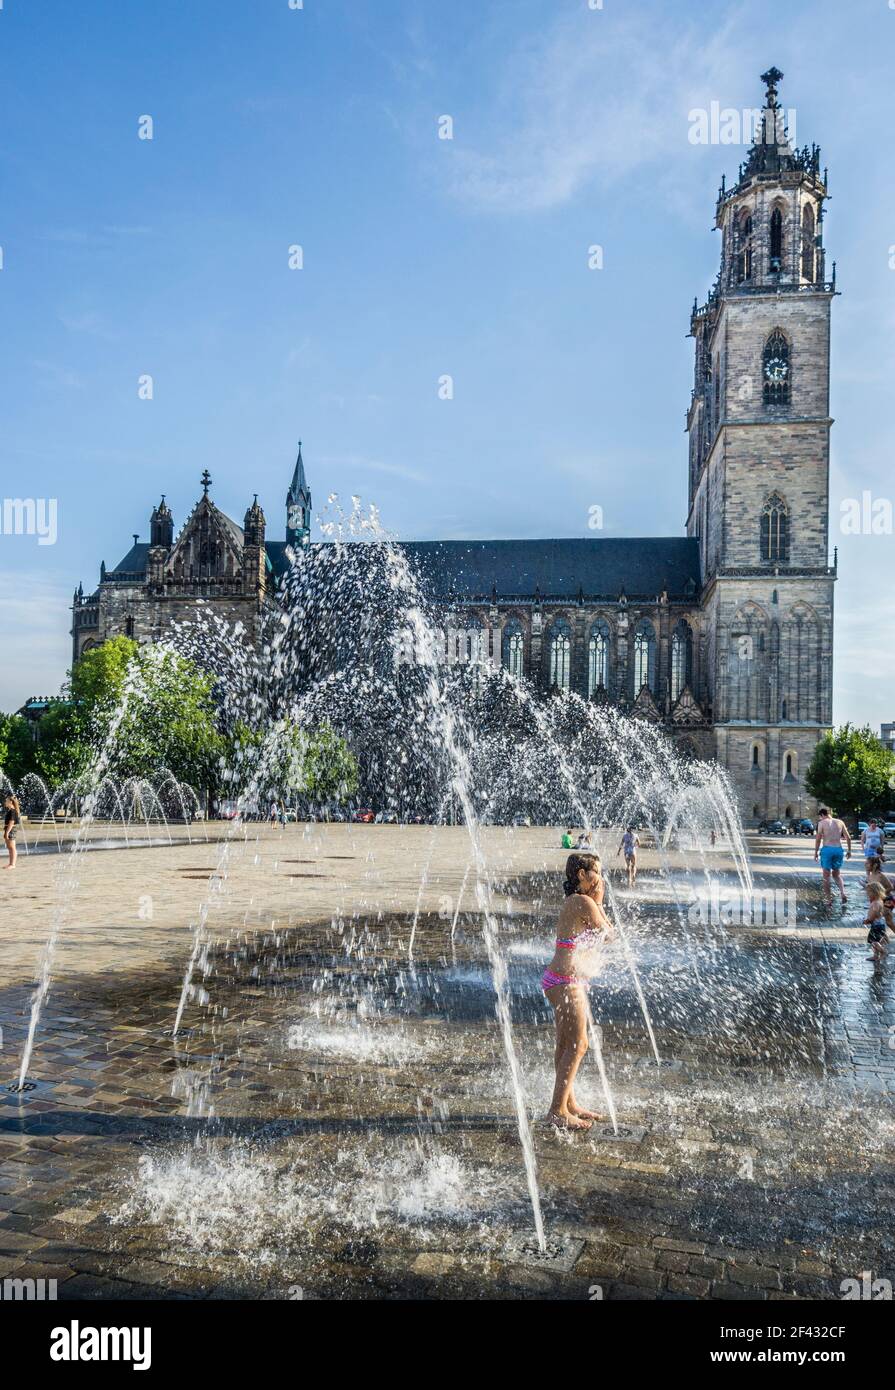 Fontane sulla piazza della cattedrale di Magdenurg sullo sfondo di stile gotico Cattedrale di Magdeburgo, Sassonia-Anhalt, Germania Foto Stock